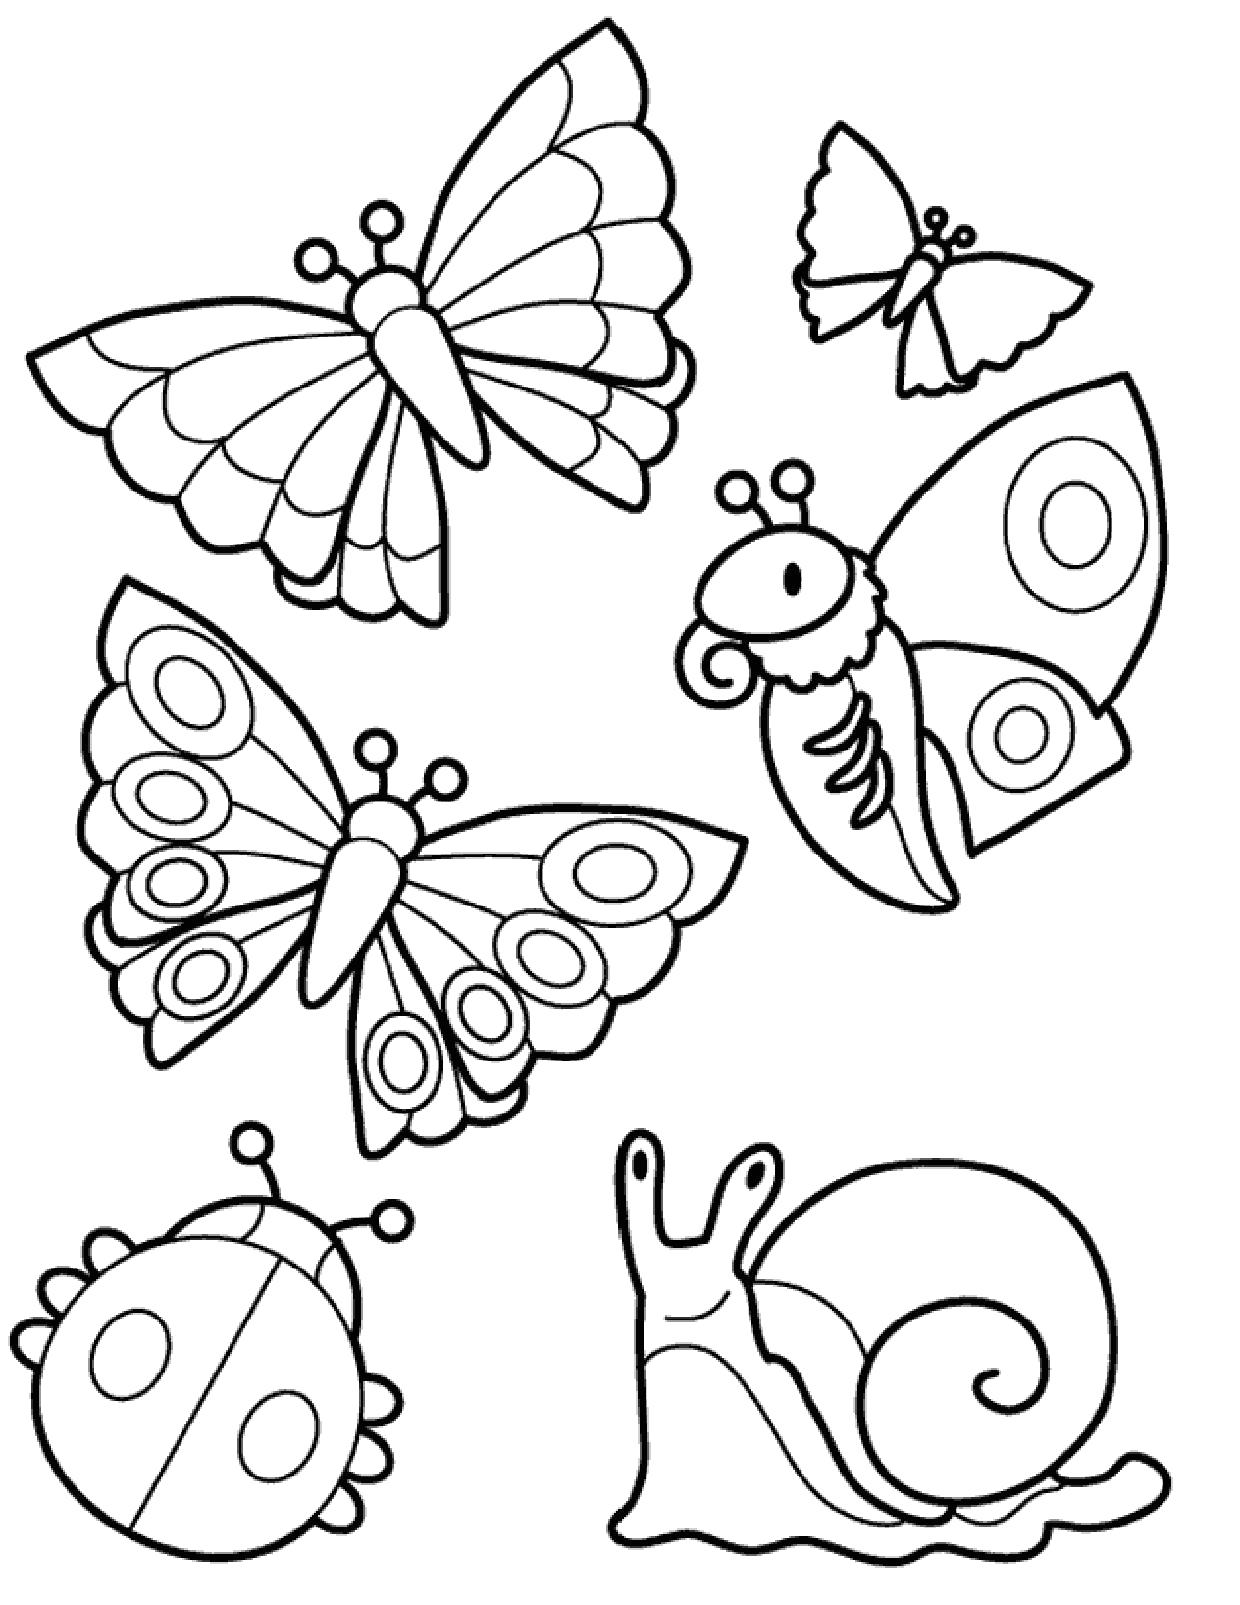 Раскраски насекомые для детей 5 6. Раскраски для детей. Насекомые. Раскраска. Раскраскаидля малышей. Бабочка раскраска для детей.